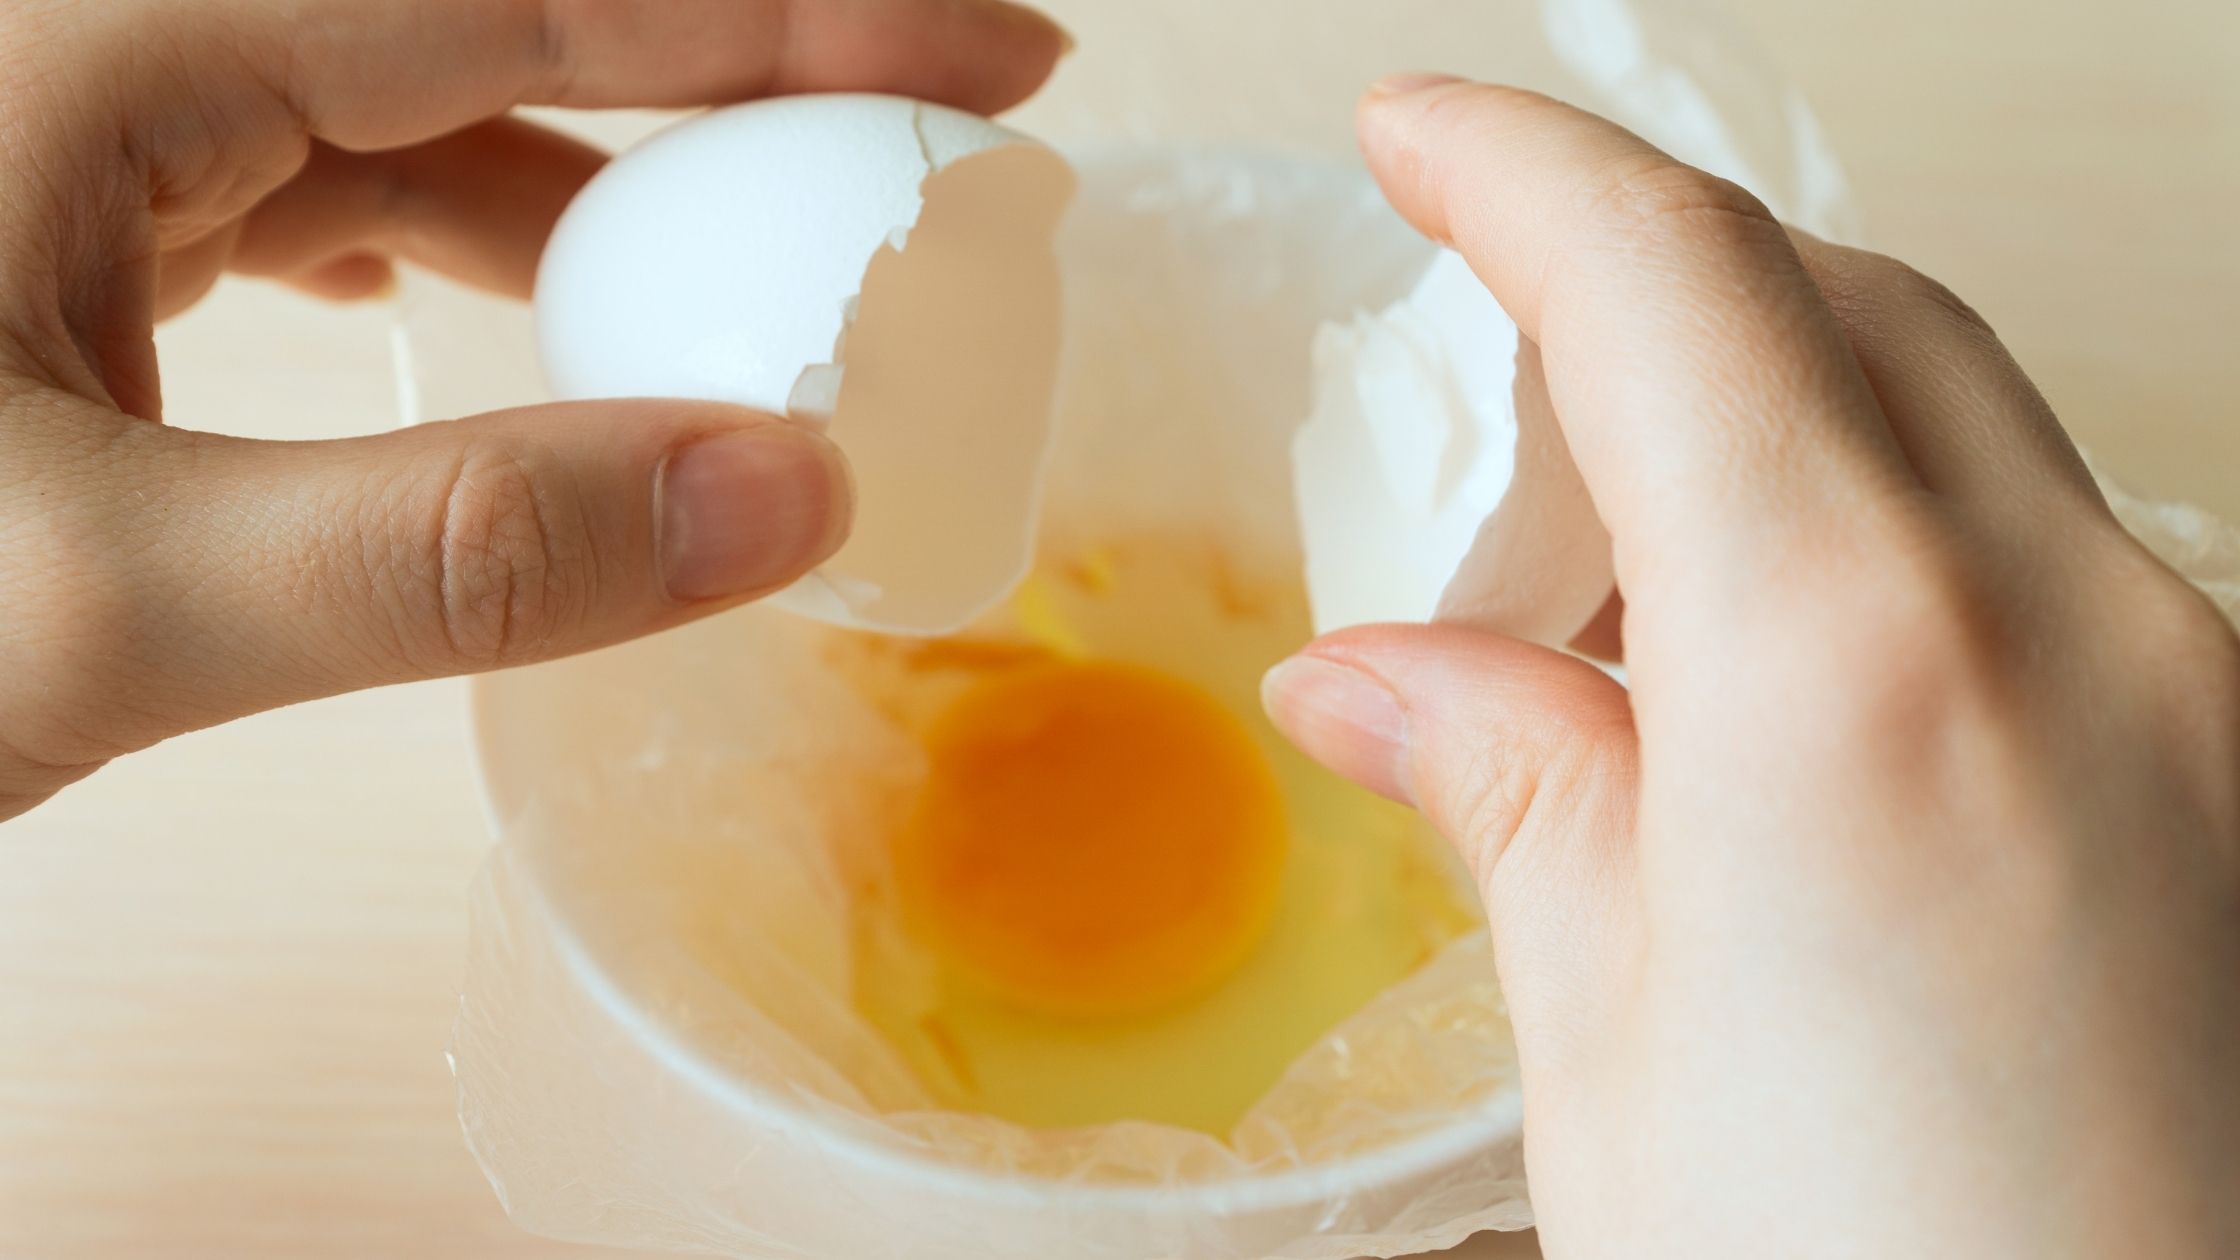 How Do You Cook Keto-Friendly Eggs